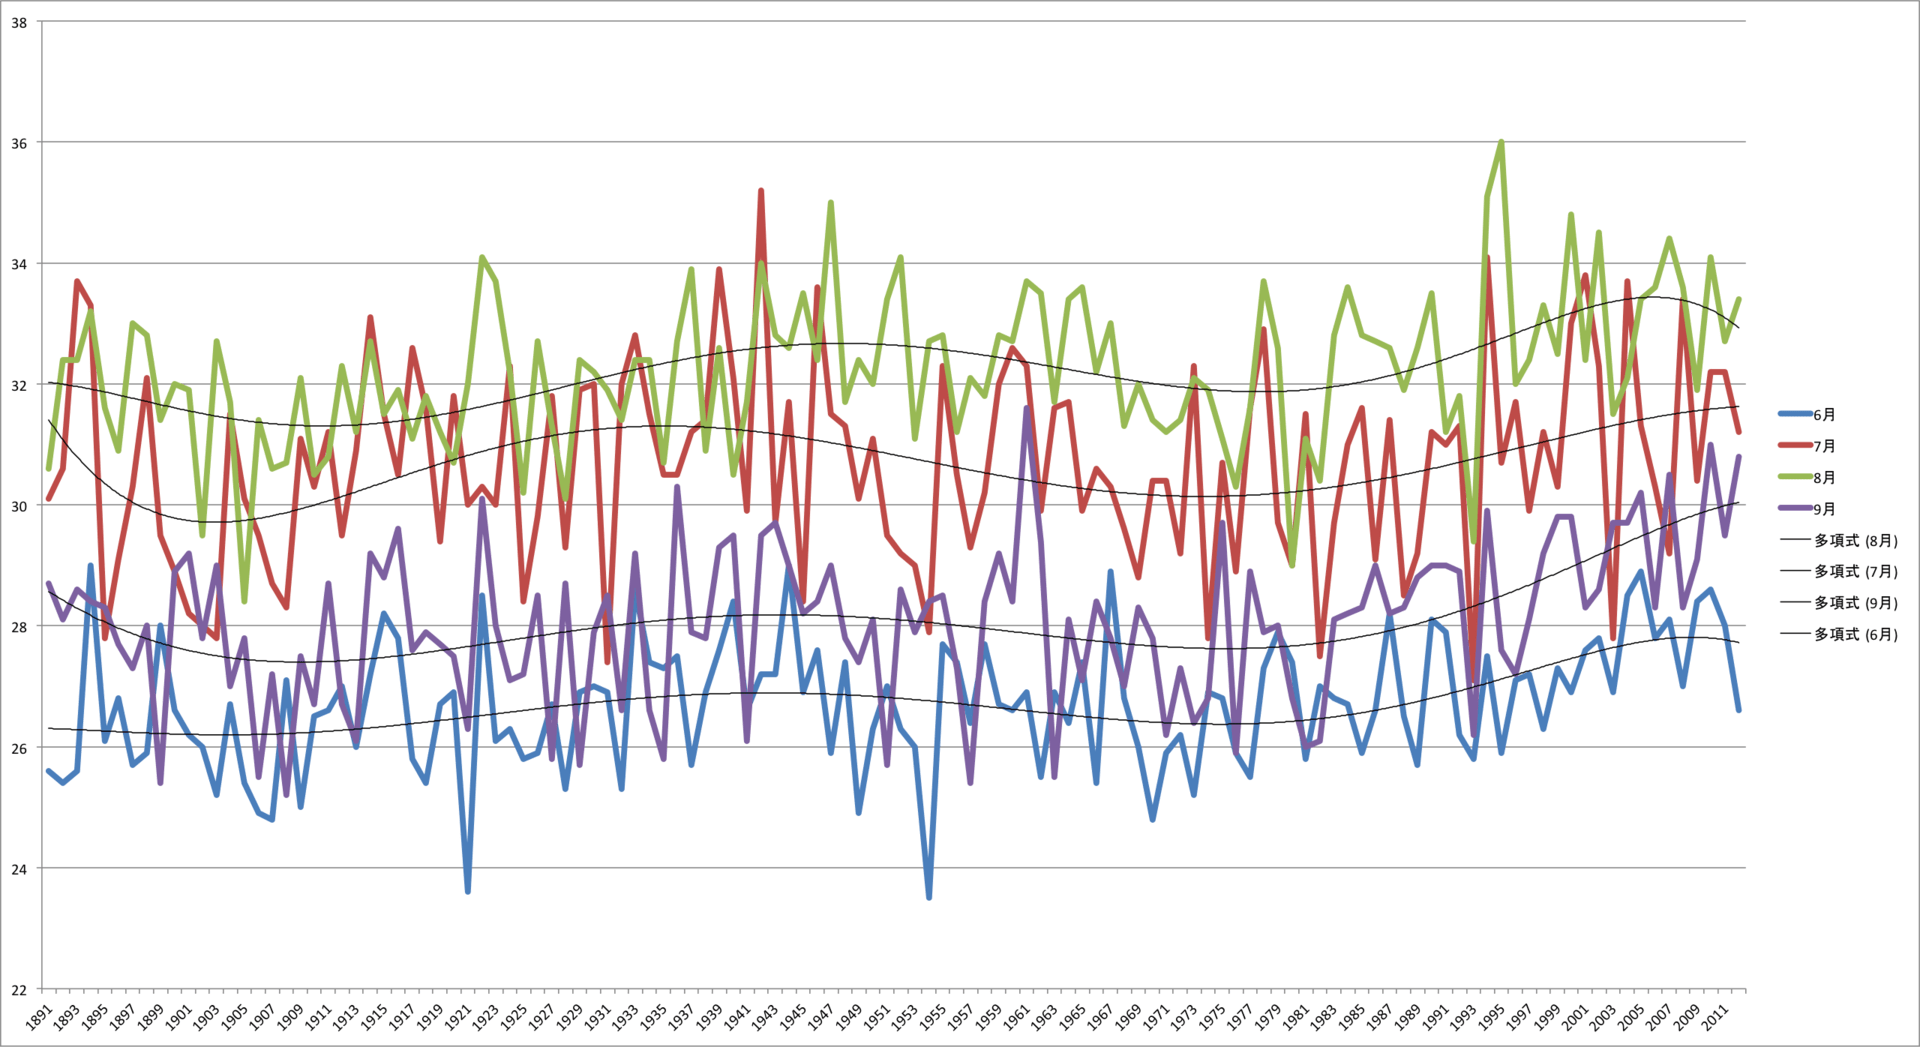 名古屋の日最高気温の月平均値の推移とグラフ 文化調査船 ガラクタ号 プログ版